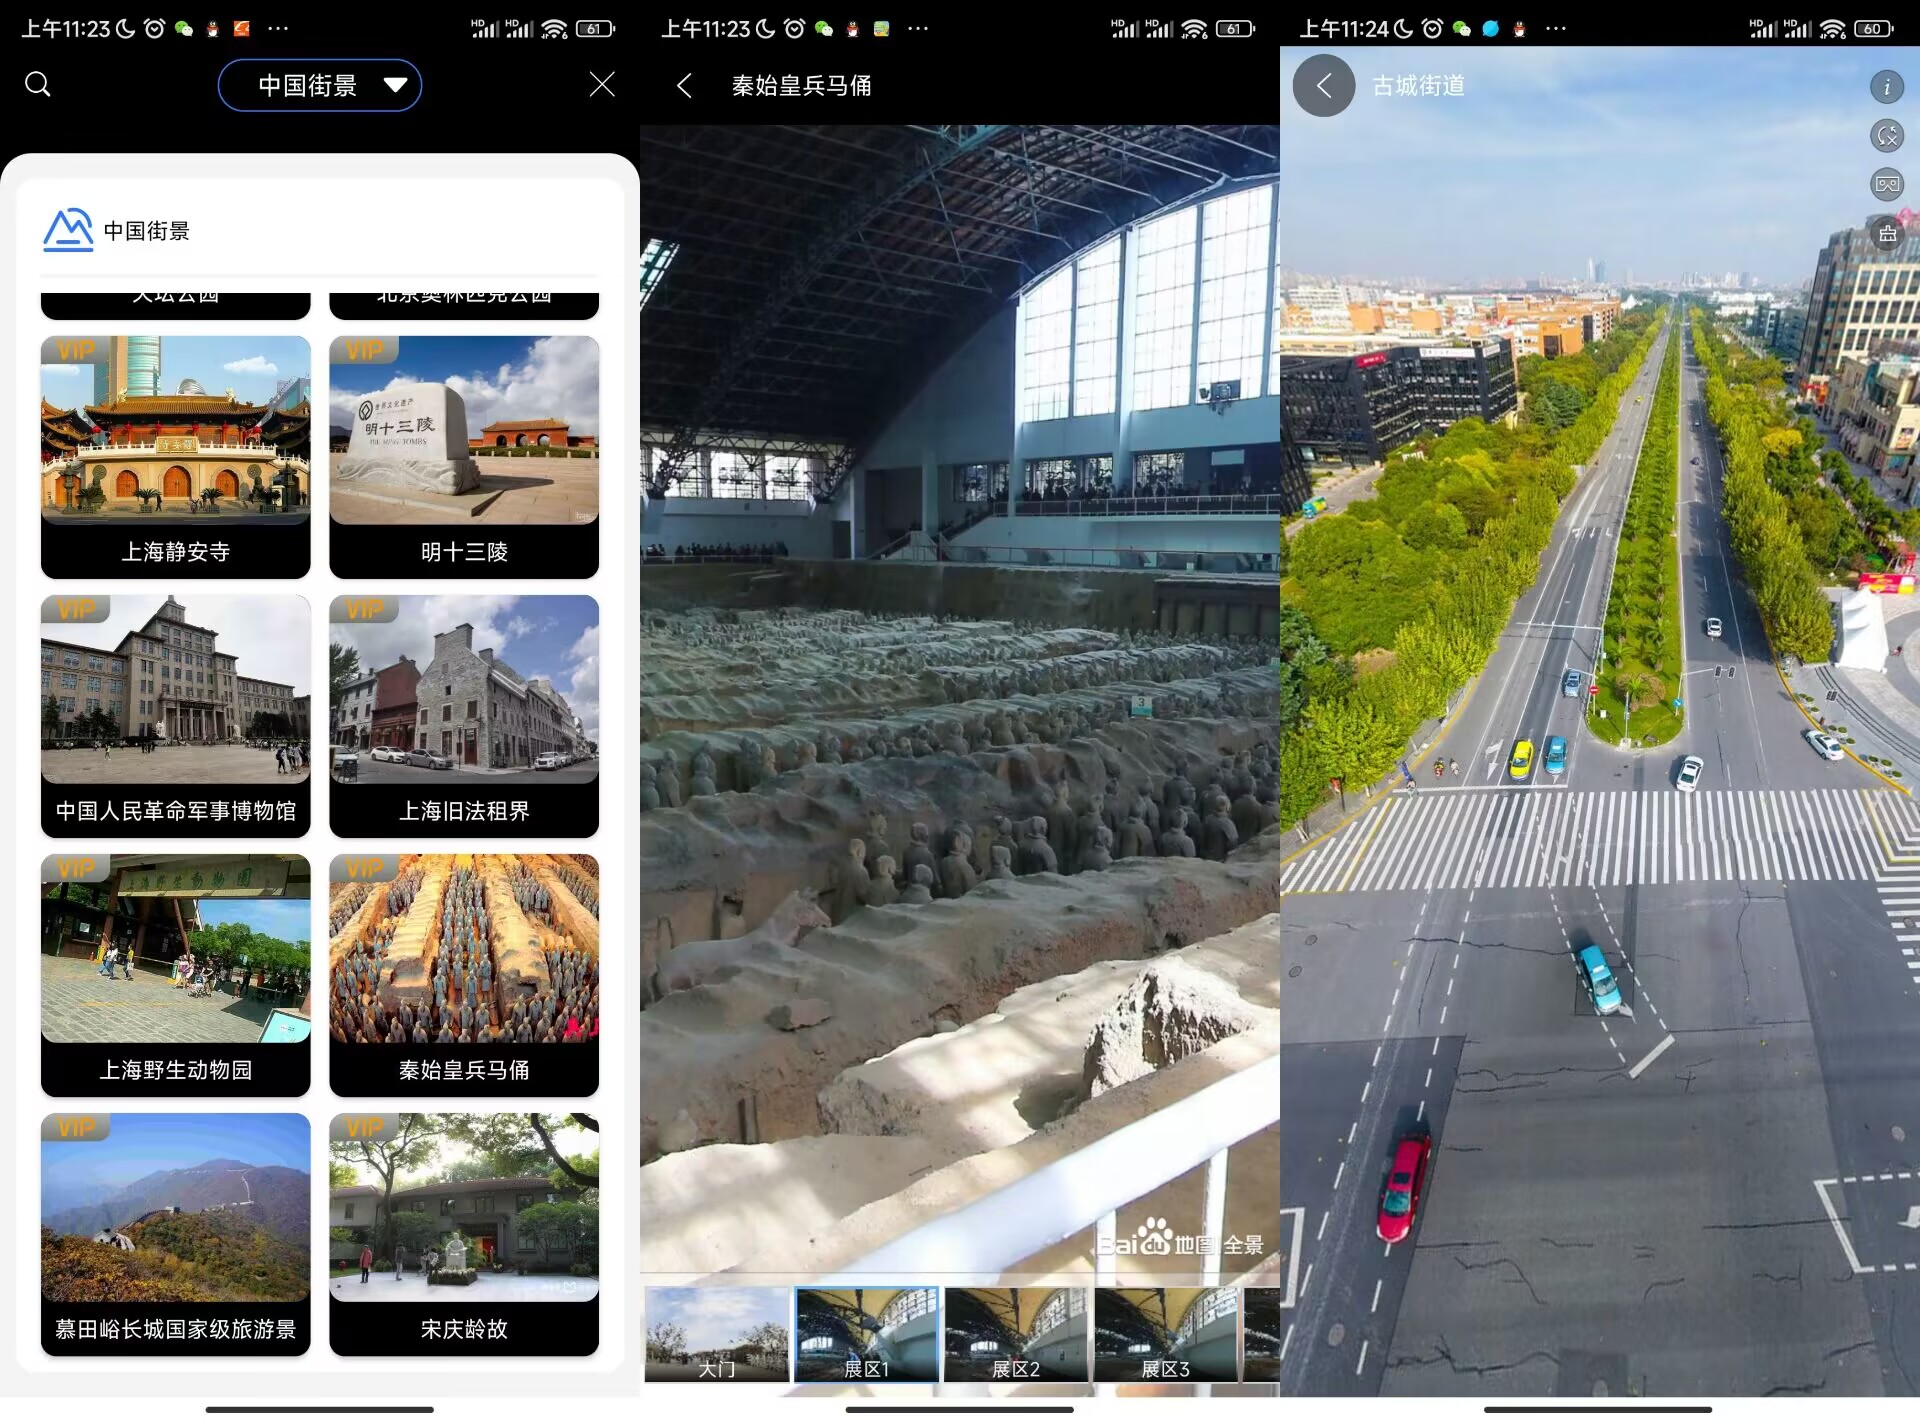 地球街景地图App 世界各地的街景